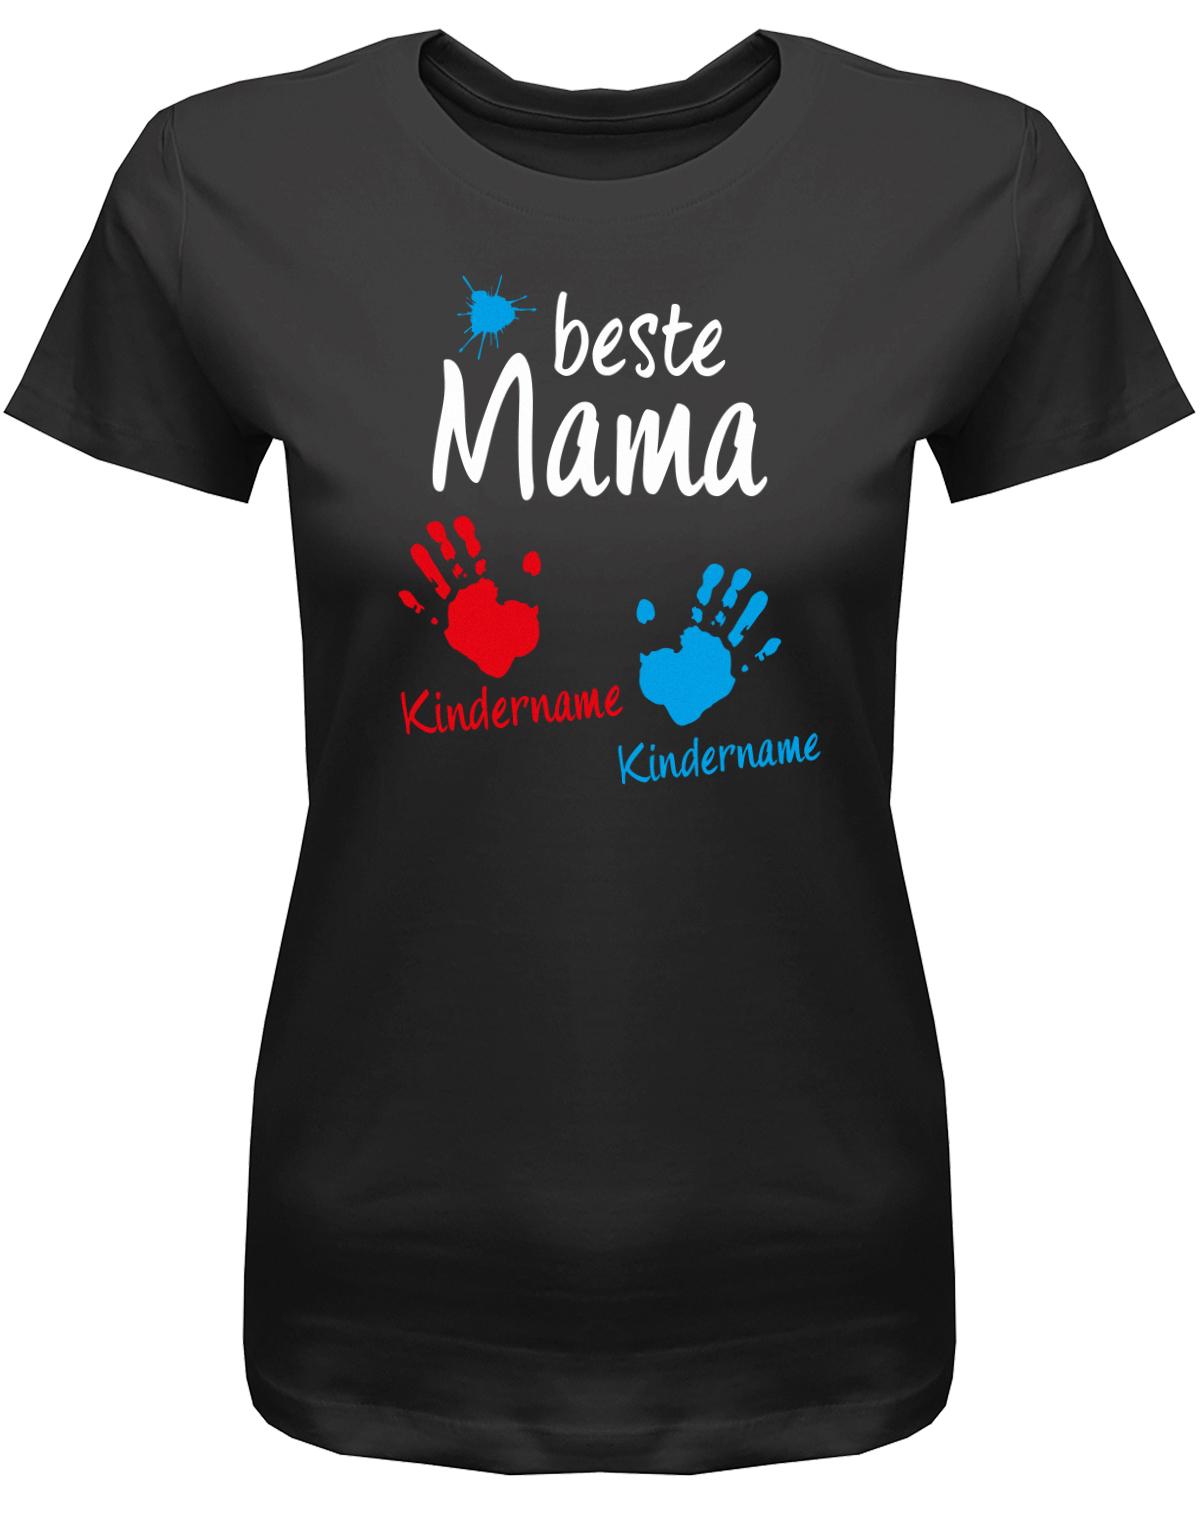 Beste-Mama-2-Kinder-Wusnchnamen-Damen-Shirt-Schwarz